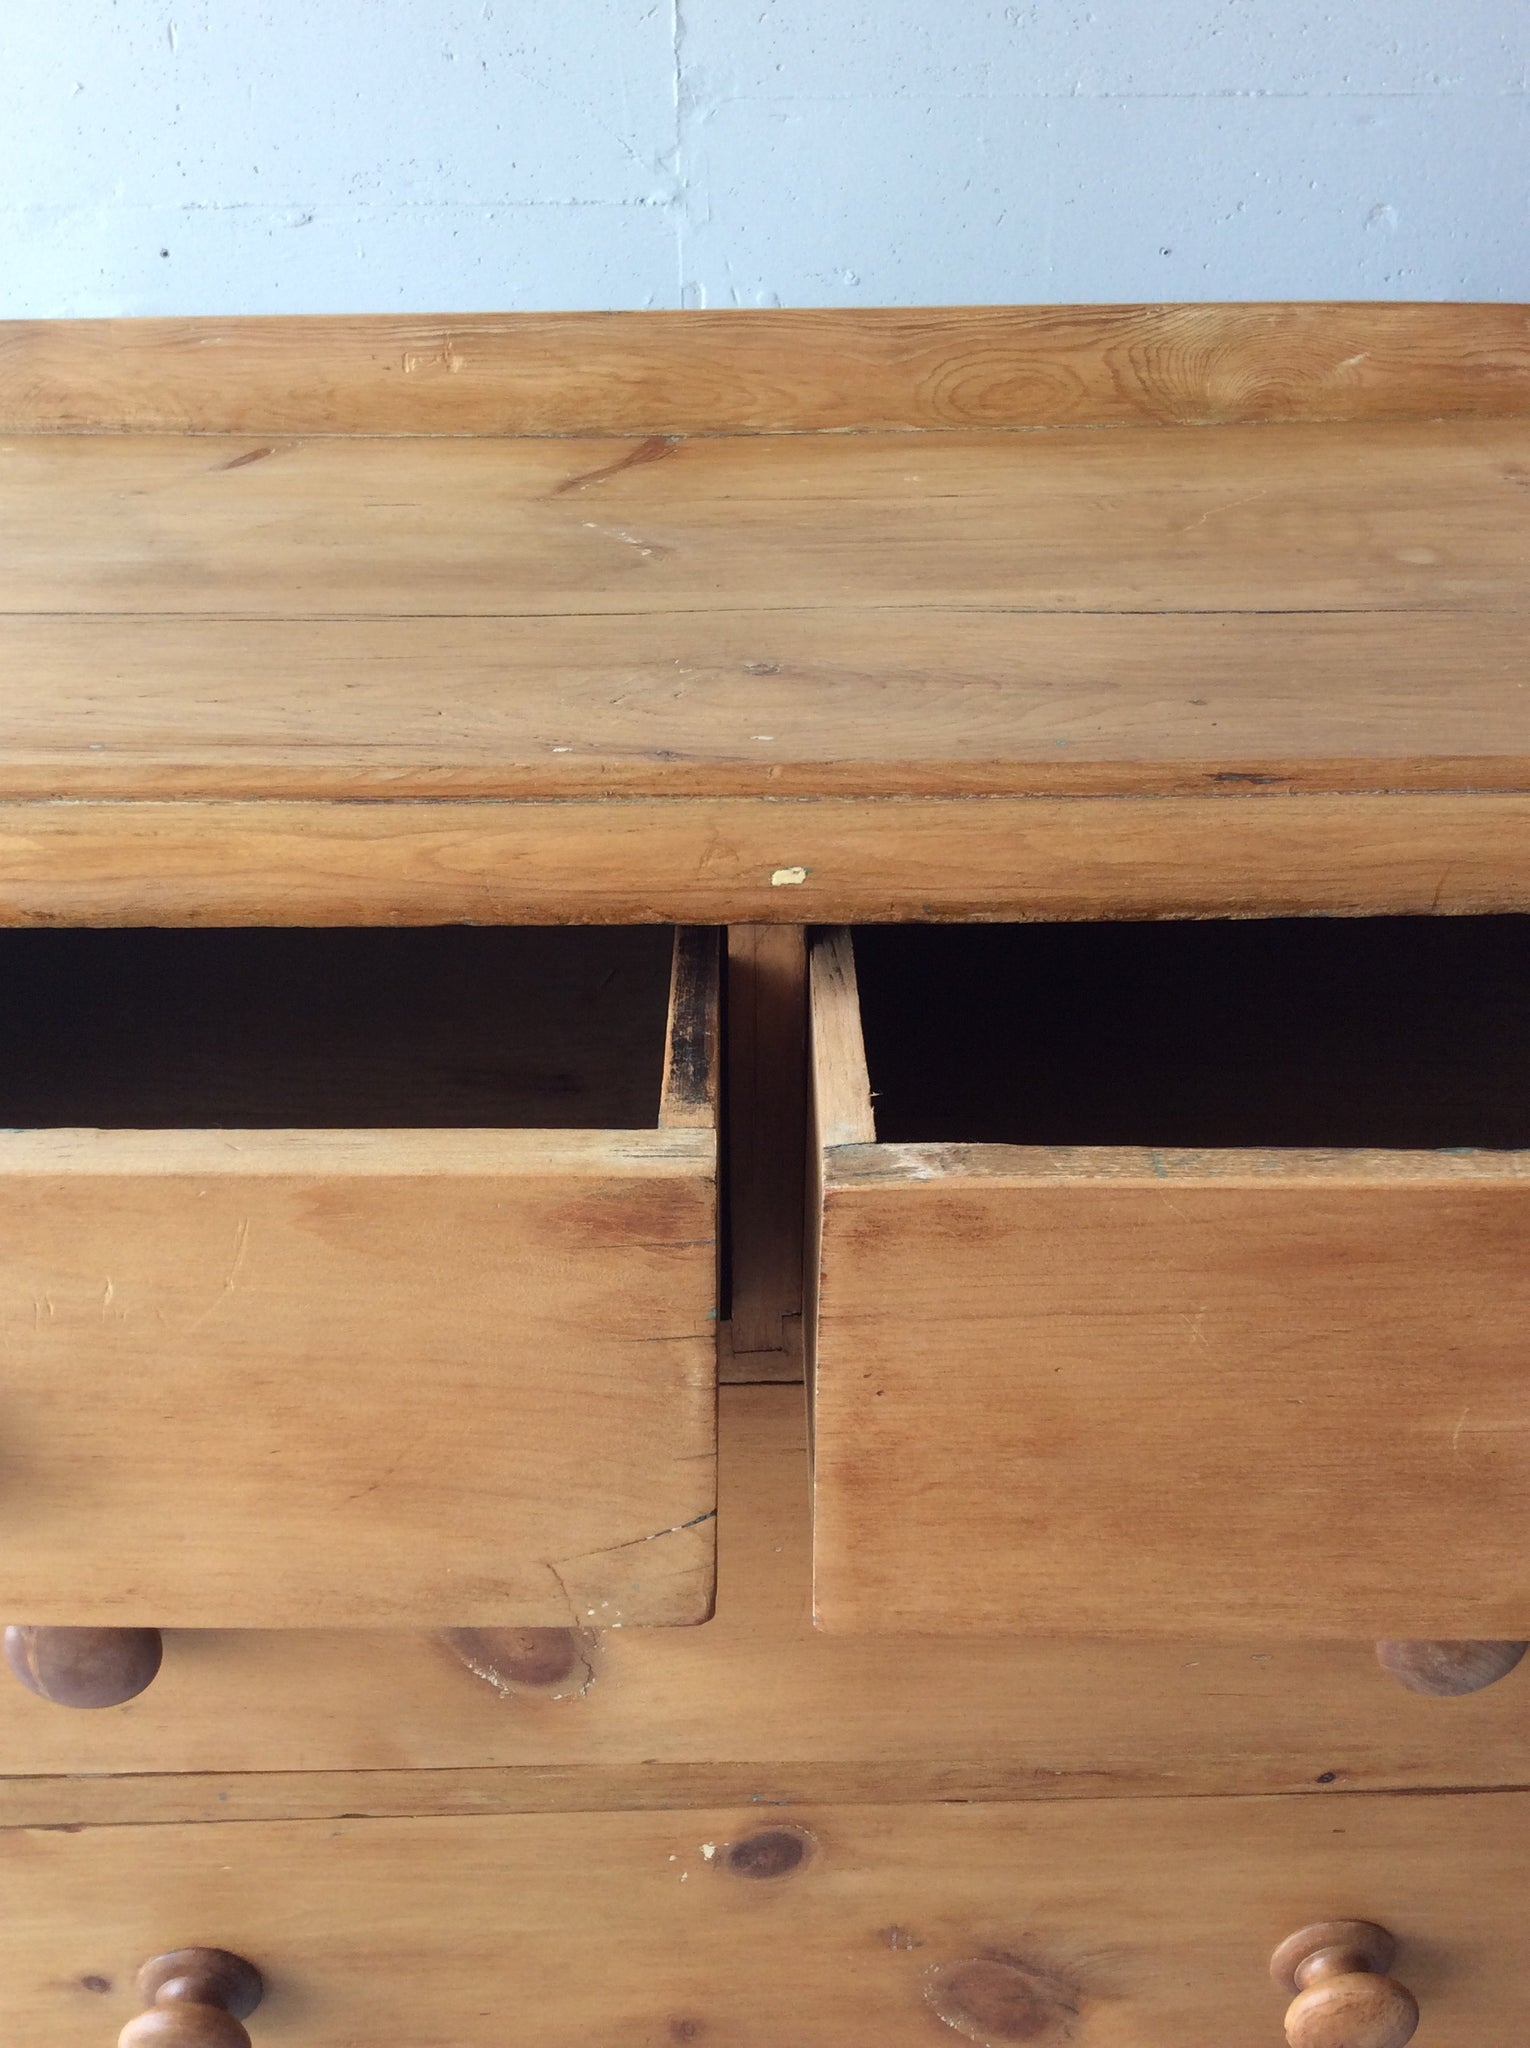 オールド パイン チェスト / old pine chest of drawers #0117